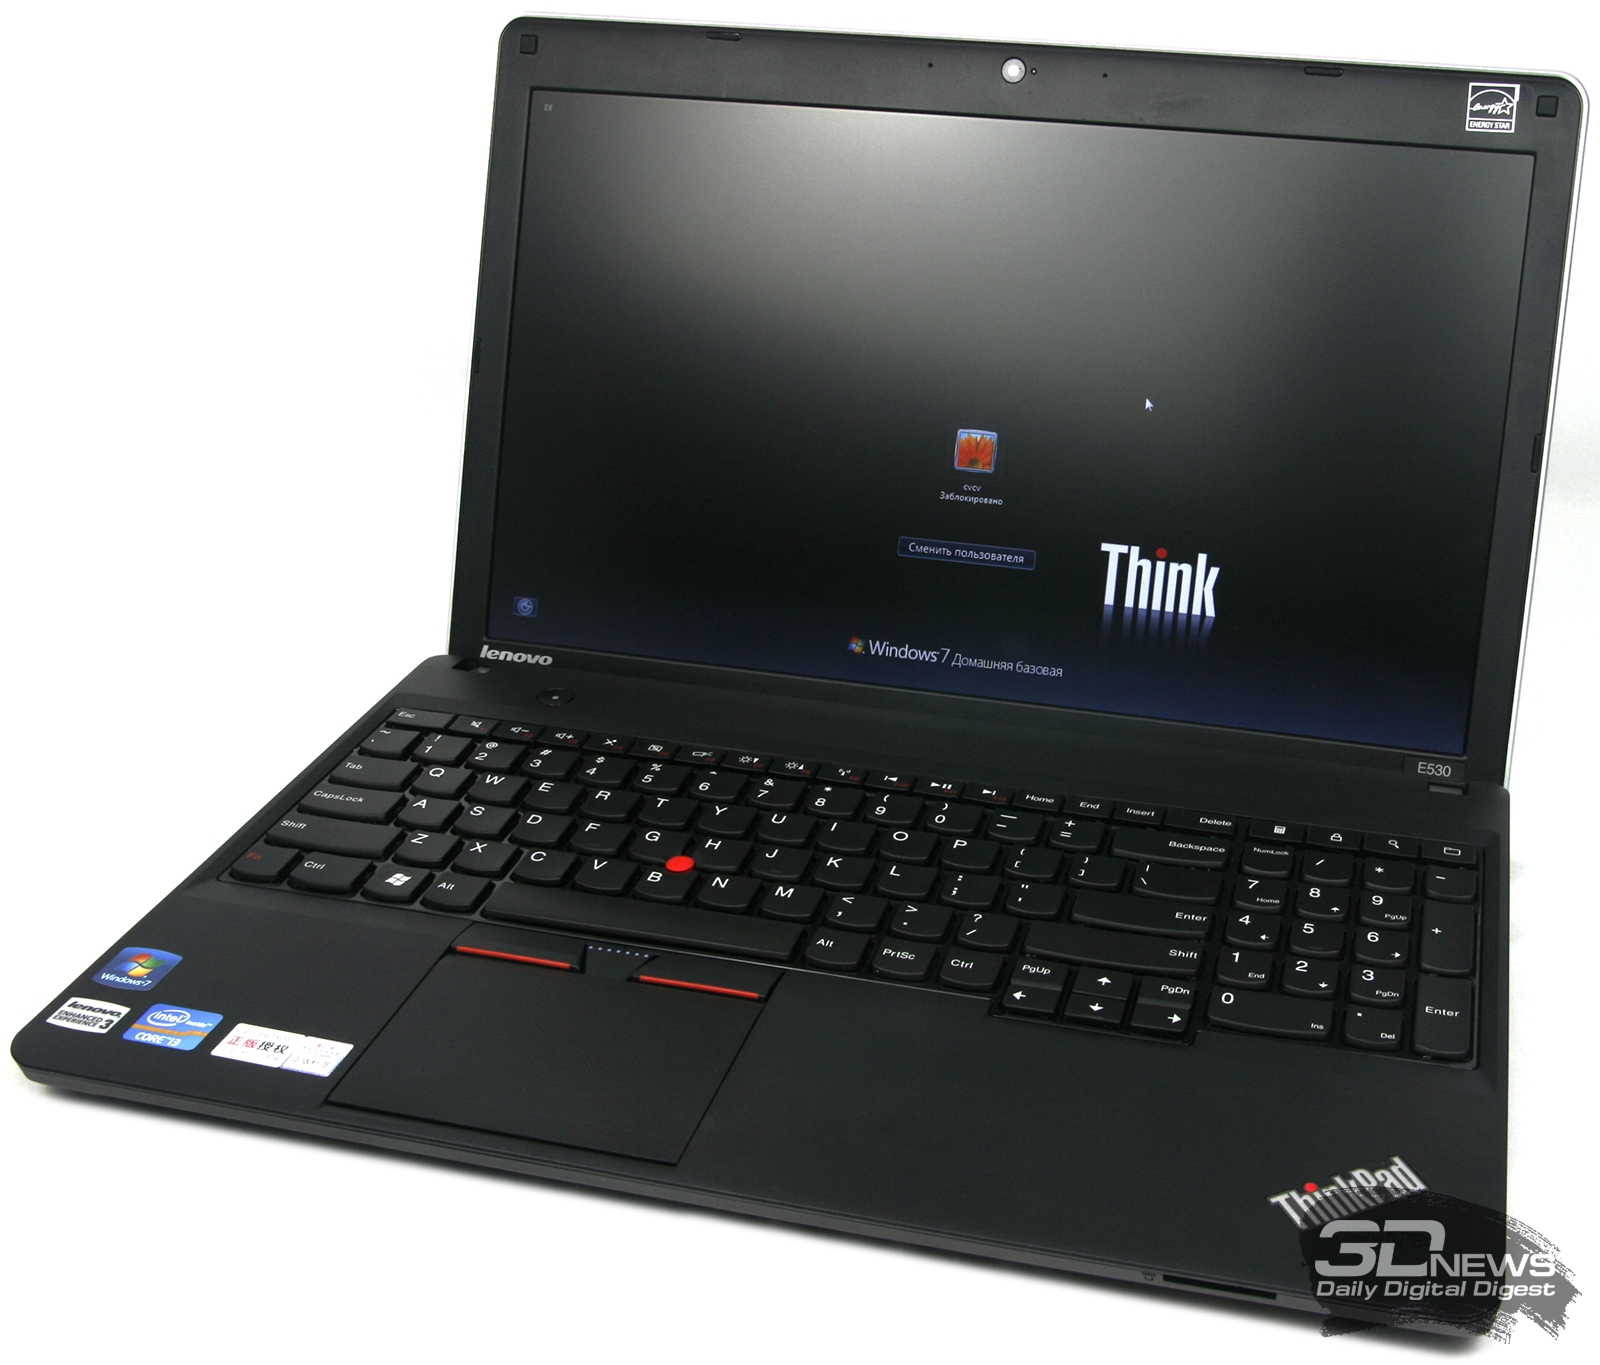 Lenovo Think Pad E530